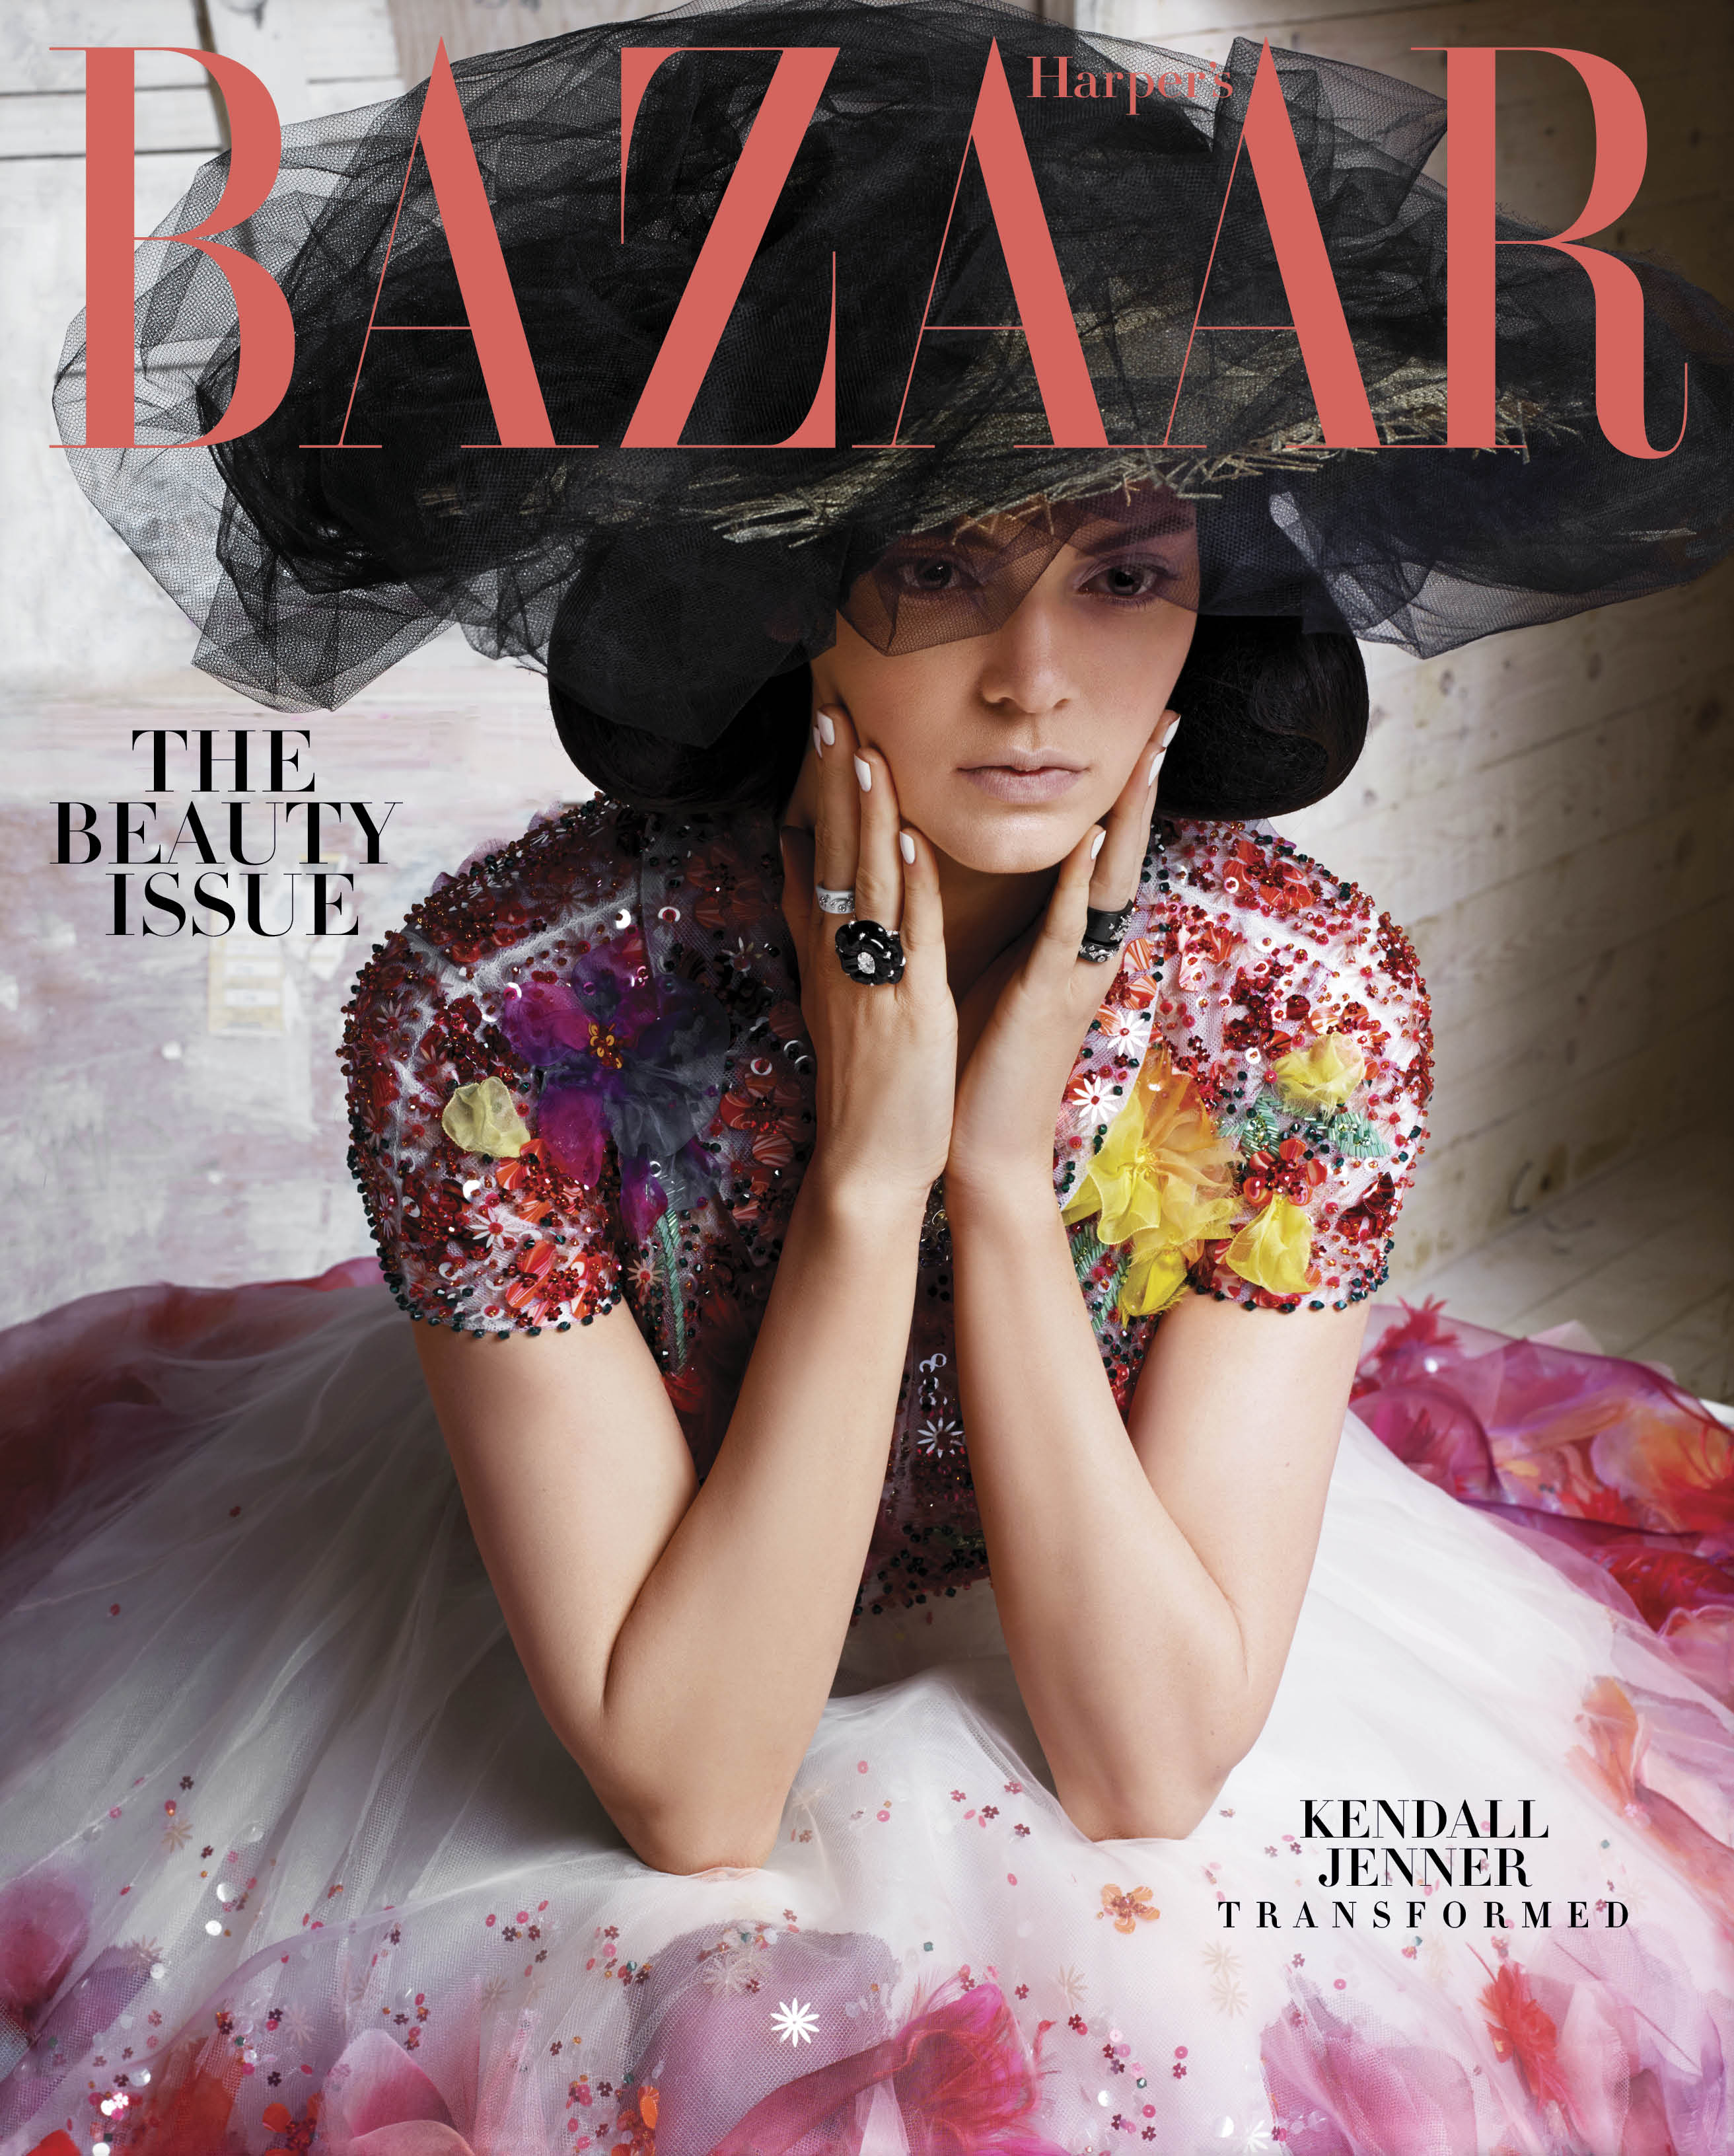 Harper's Bazaar-"Kendall Jenner Transformed," May